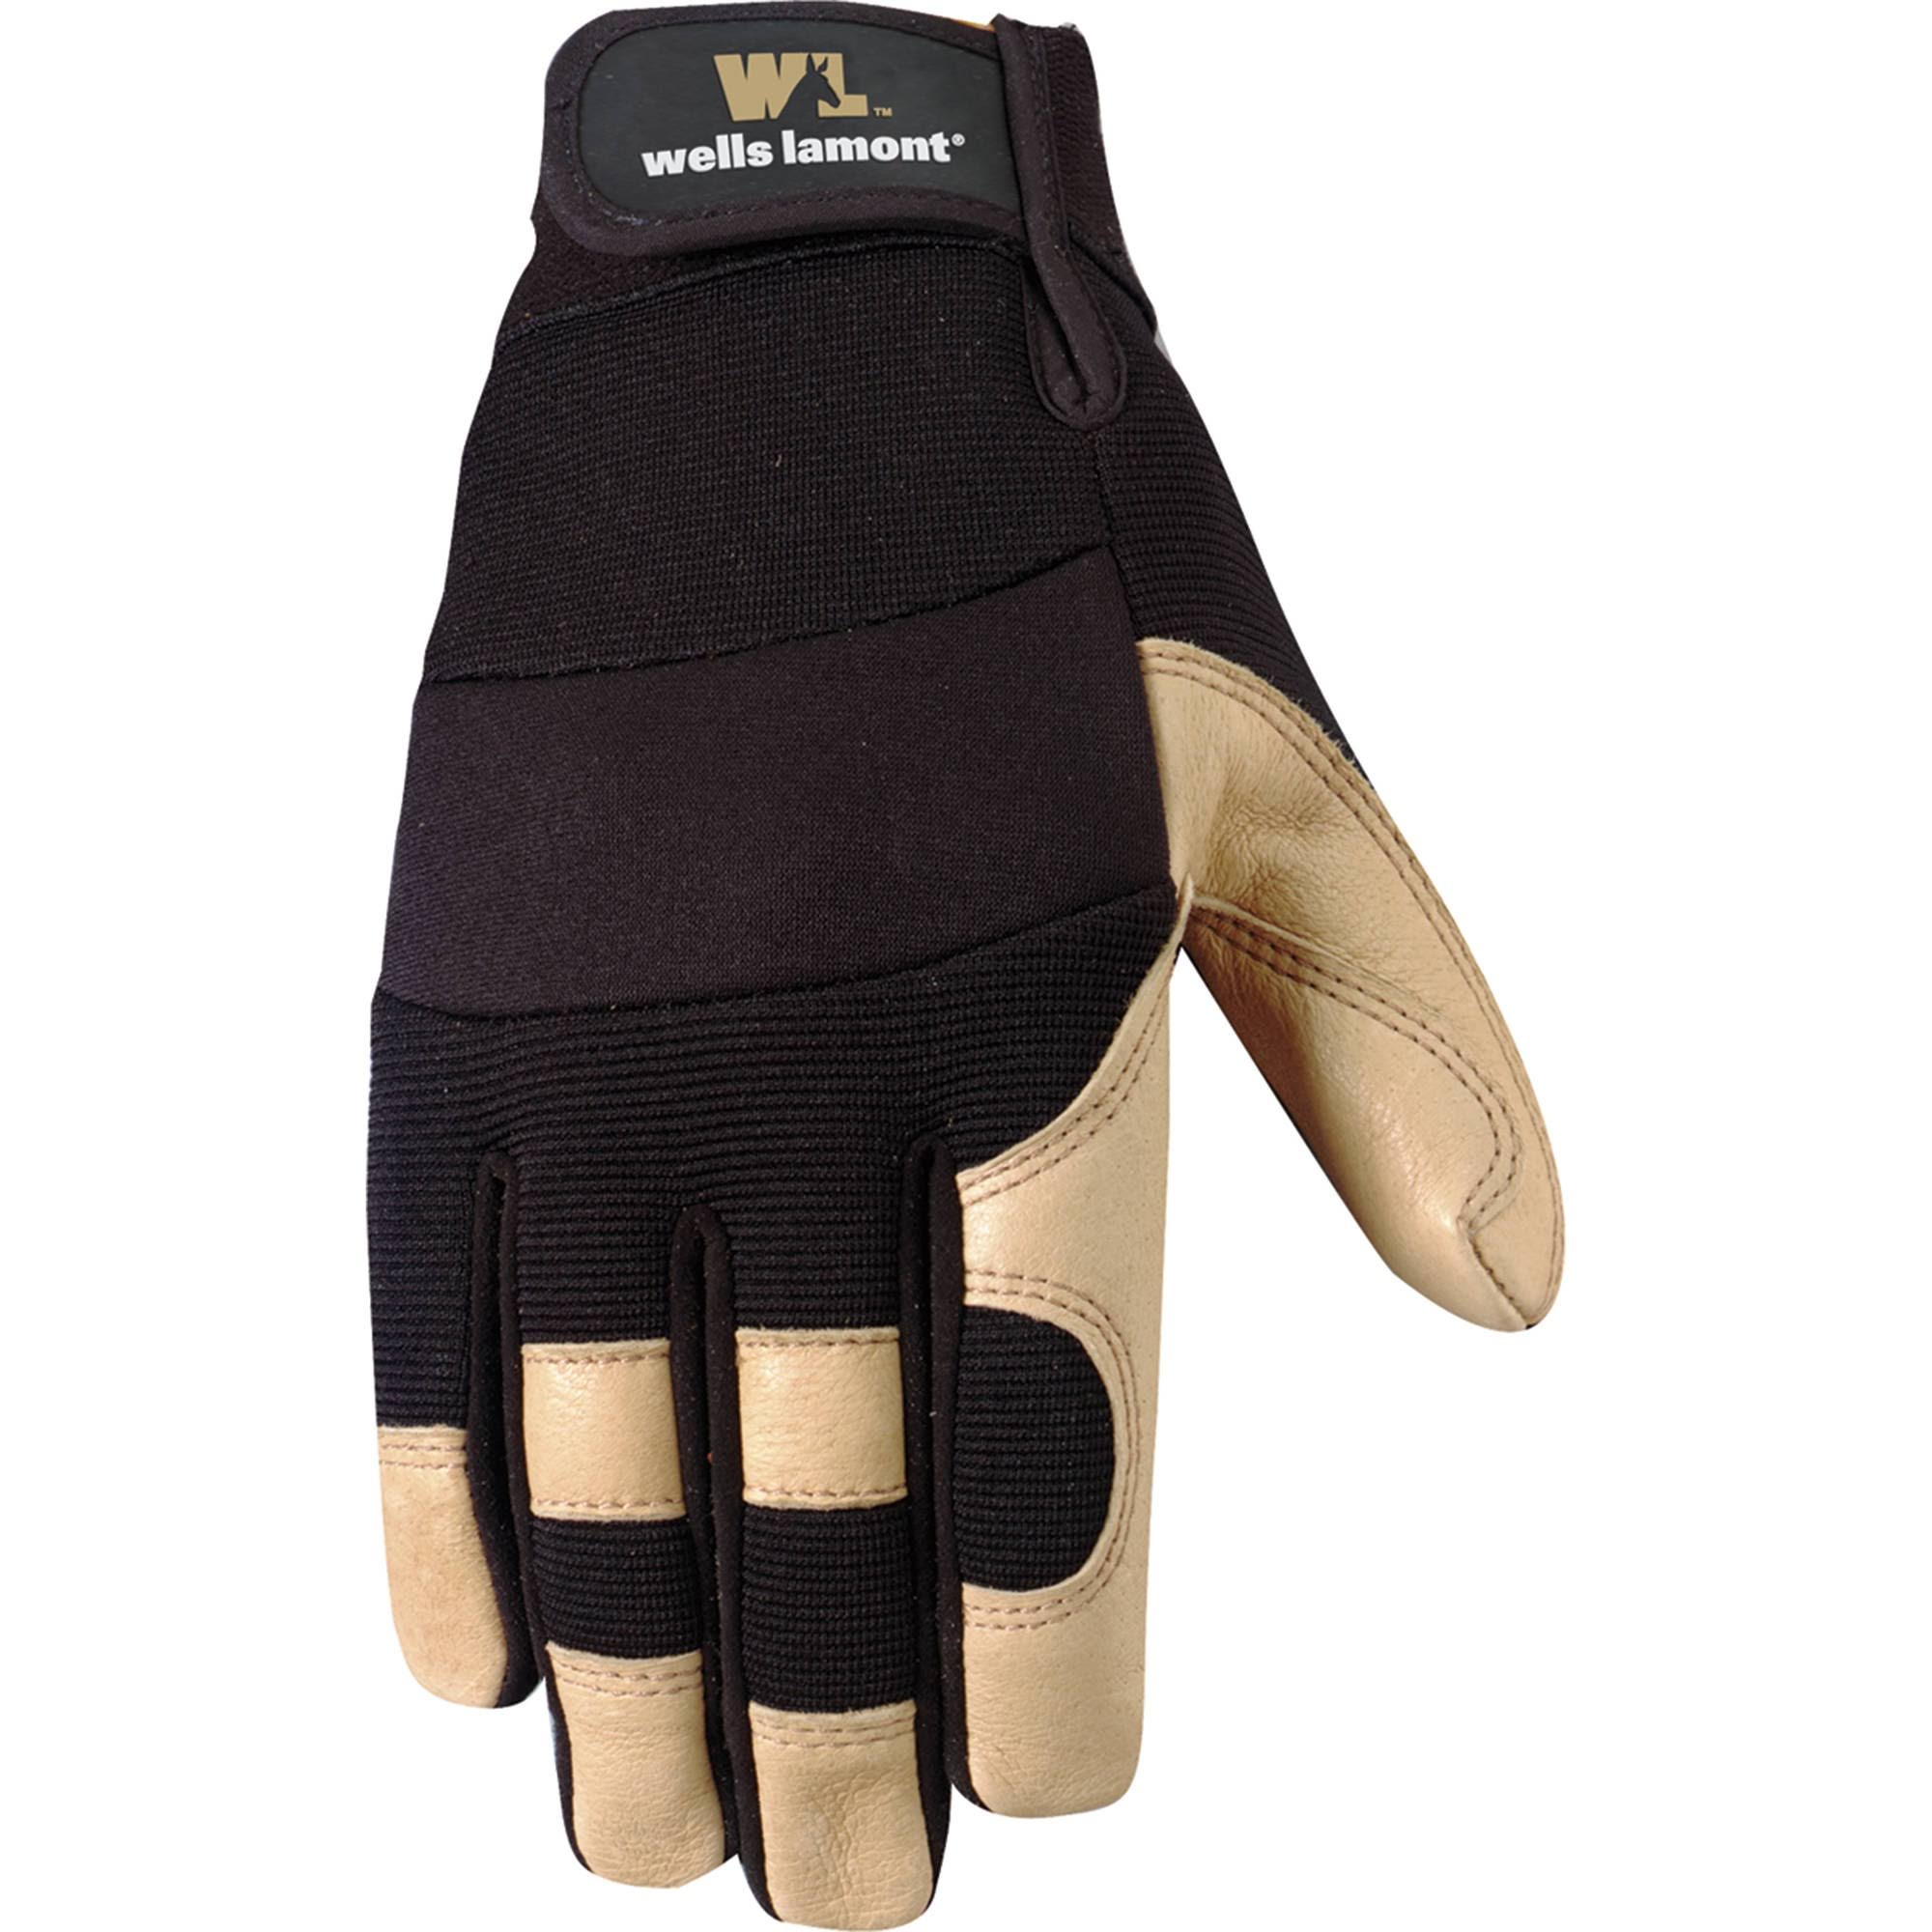 Wells Lamont Grain Pigskin Work Gloves for Men - X-Large